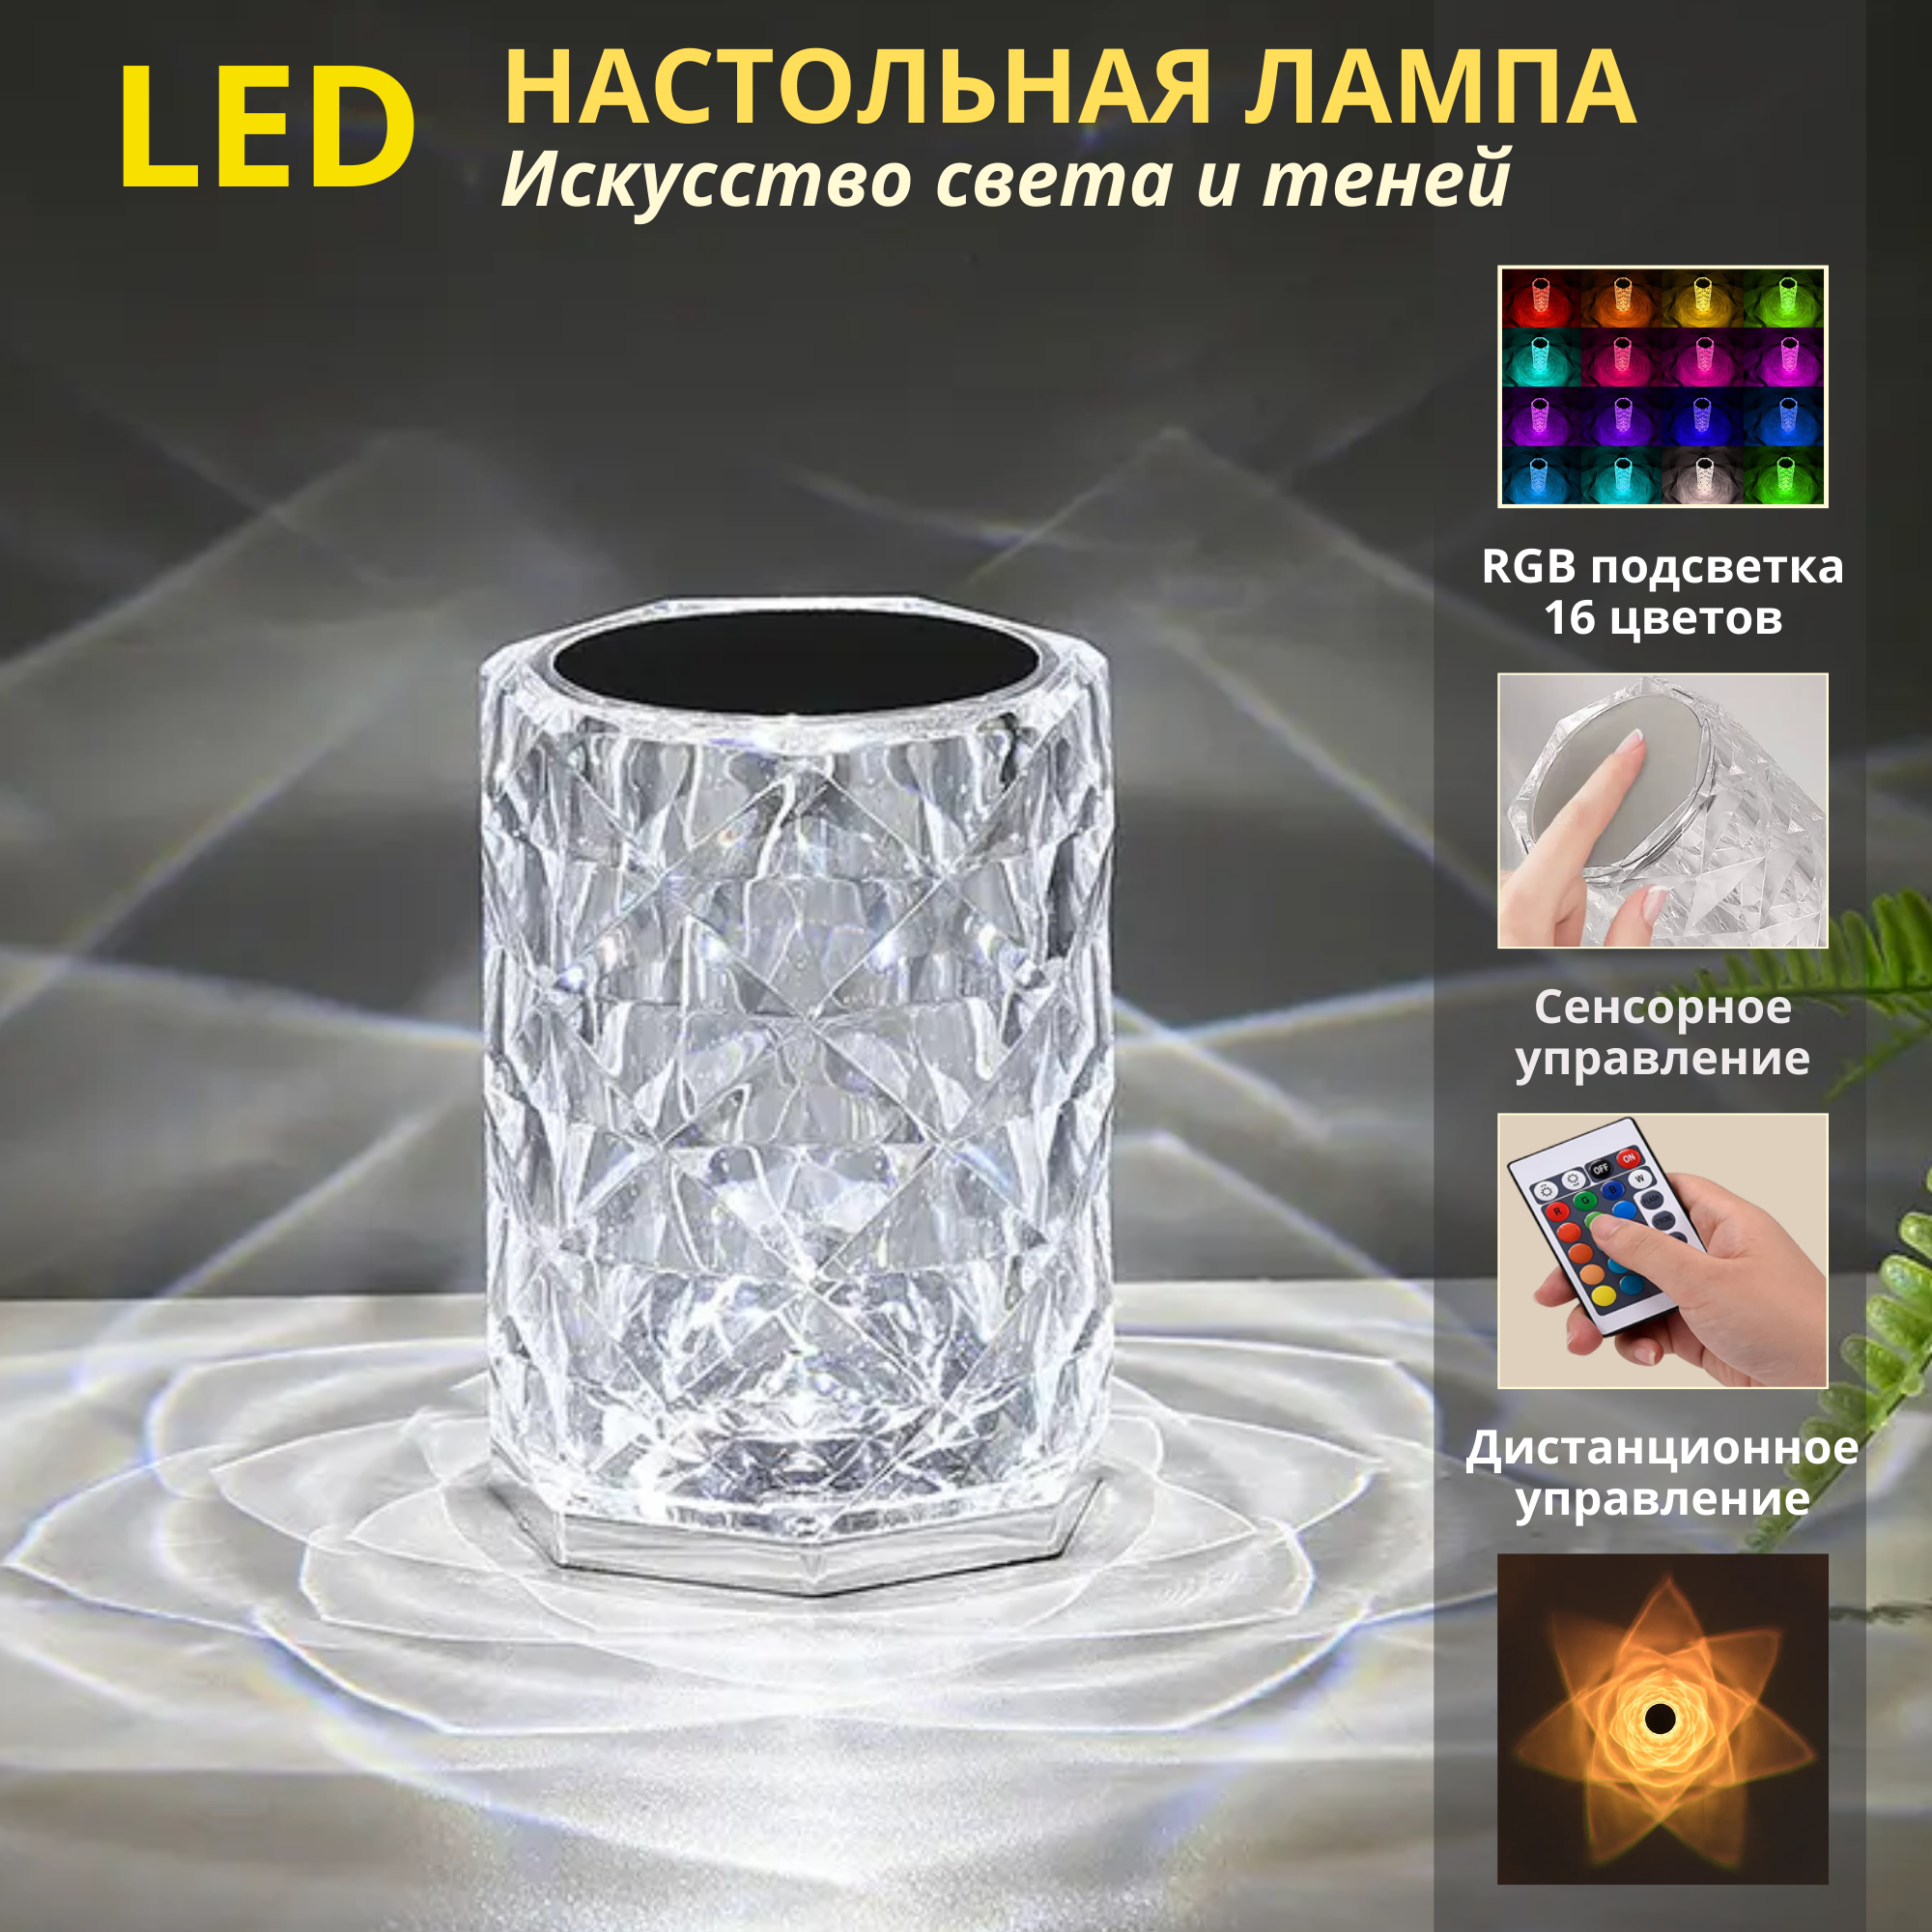 Лампа настольная беспроводная FEDOTOV светодиодная с пультом д/у, RGB